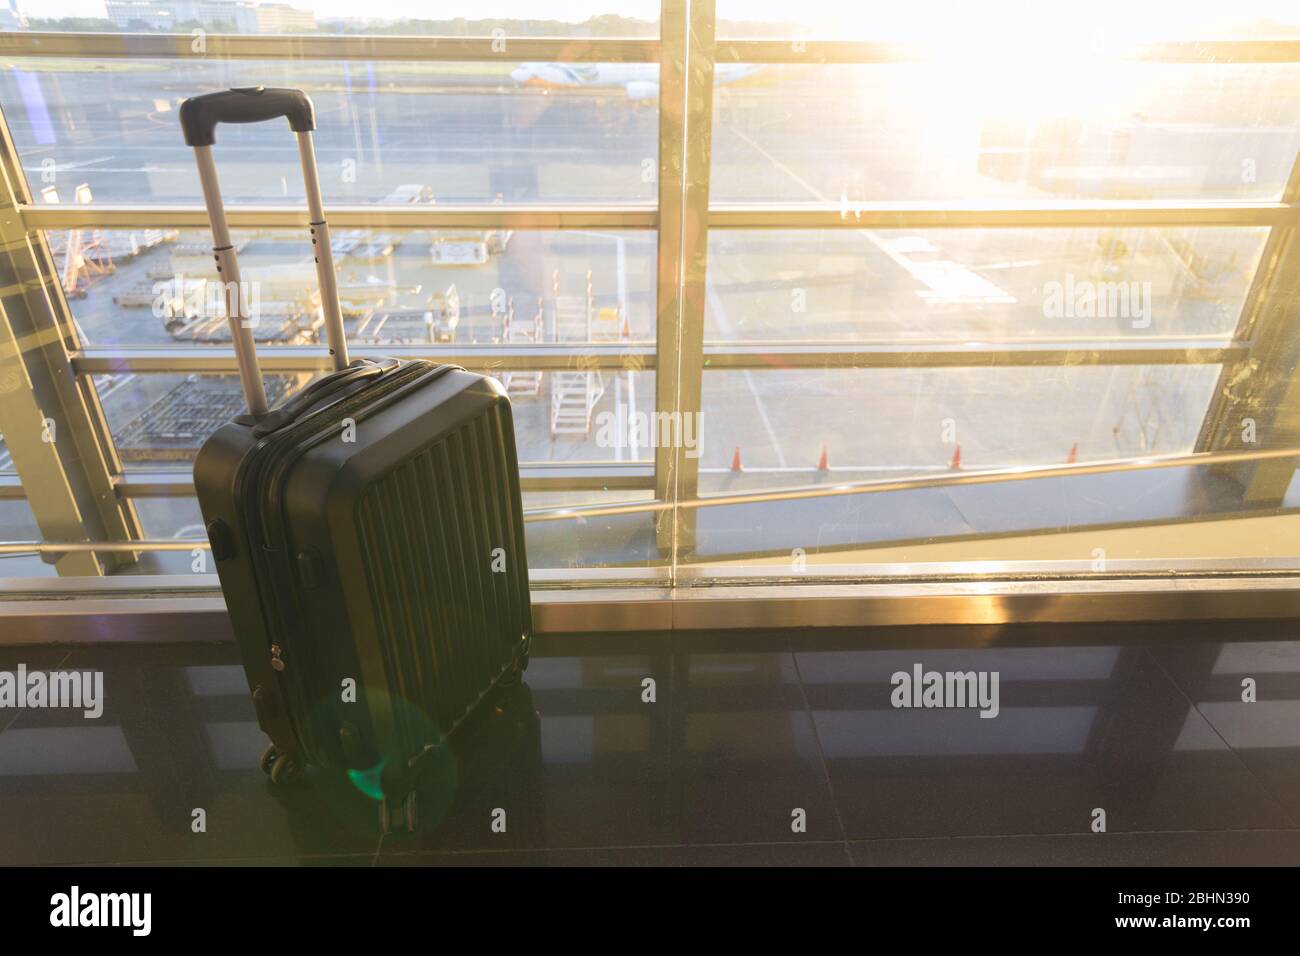 Gros plan d'une grande valise à bagages près de la fenêtre de l'aéroport. Concept de déplacement Banque D'Images